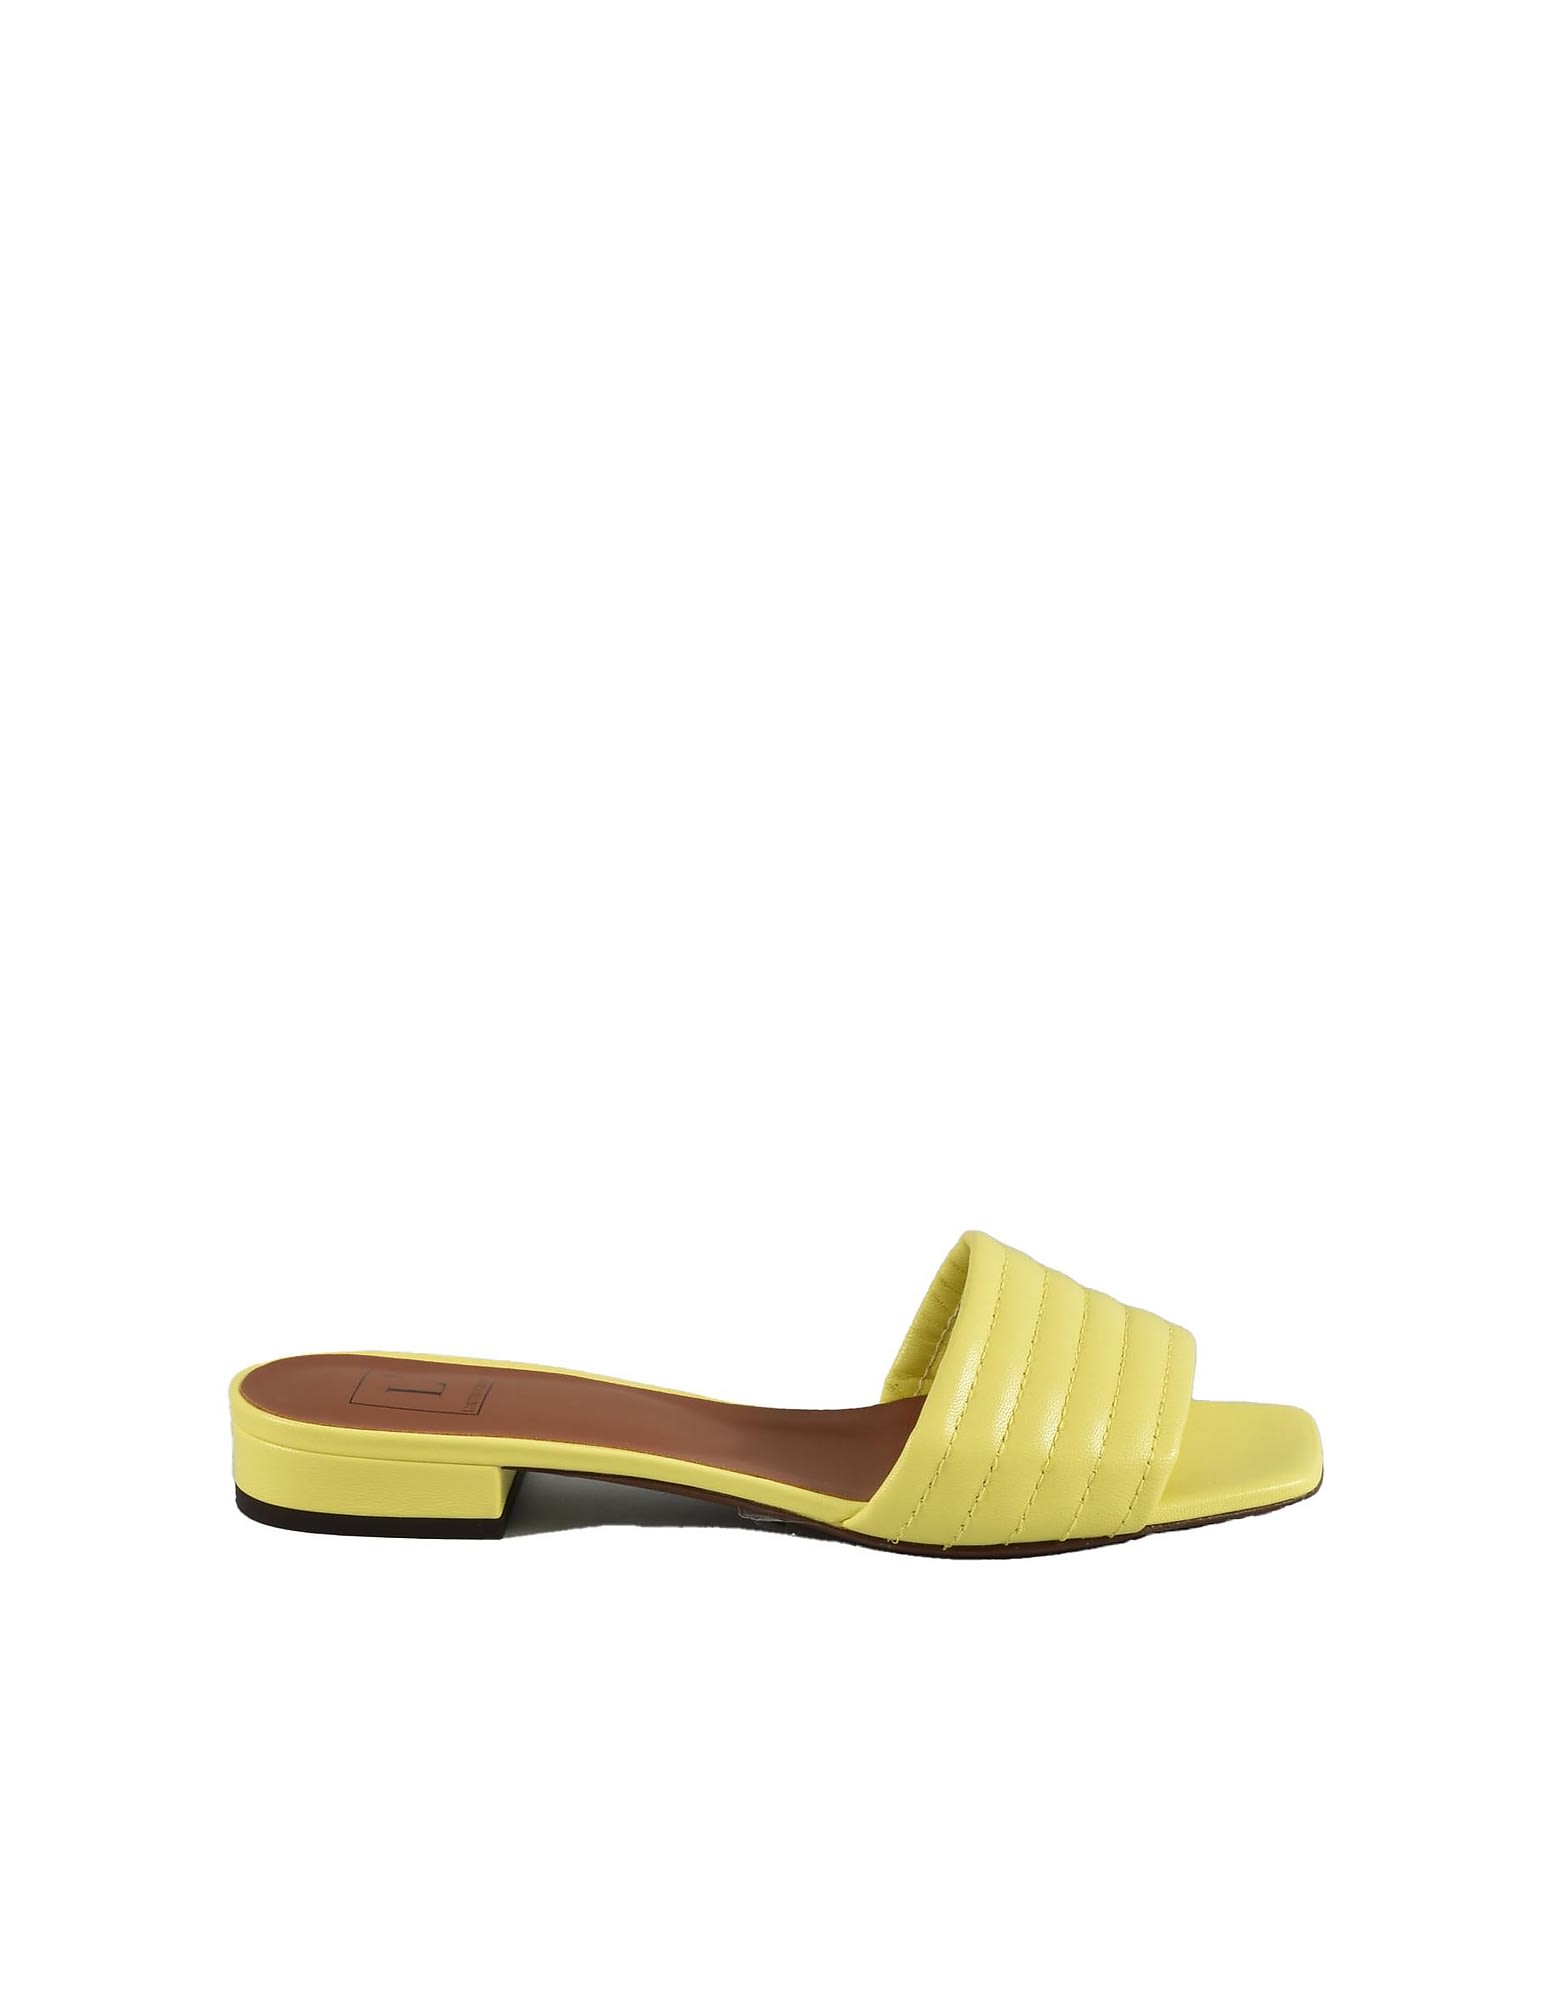 L'Autre Chose Womens Yellow Sandals